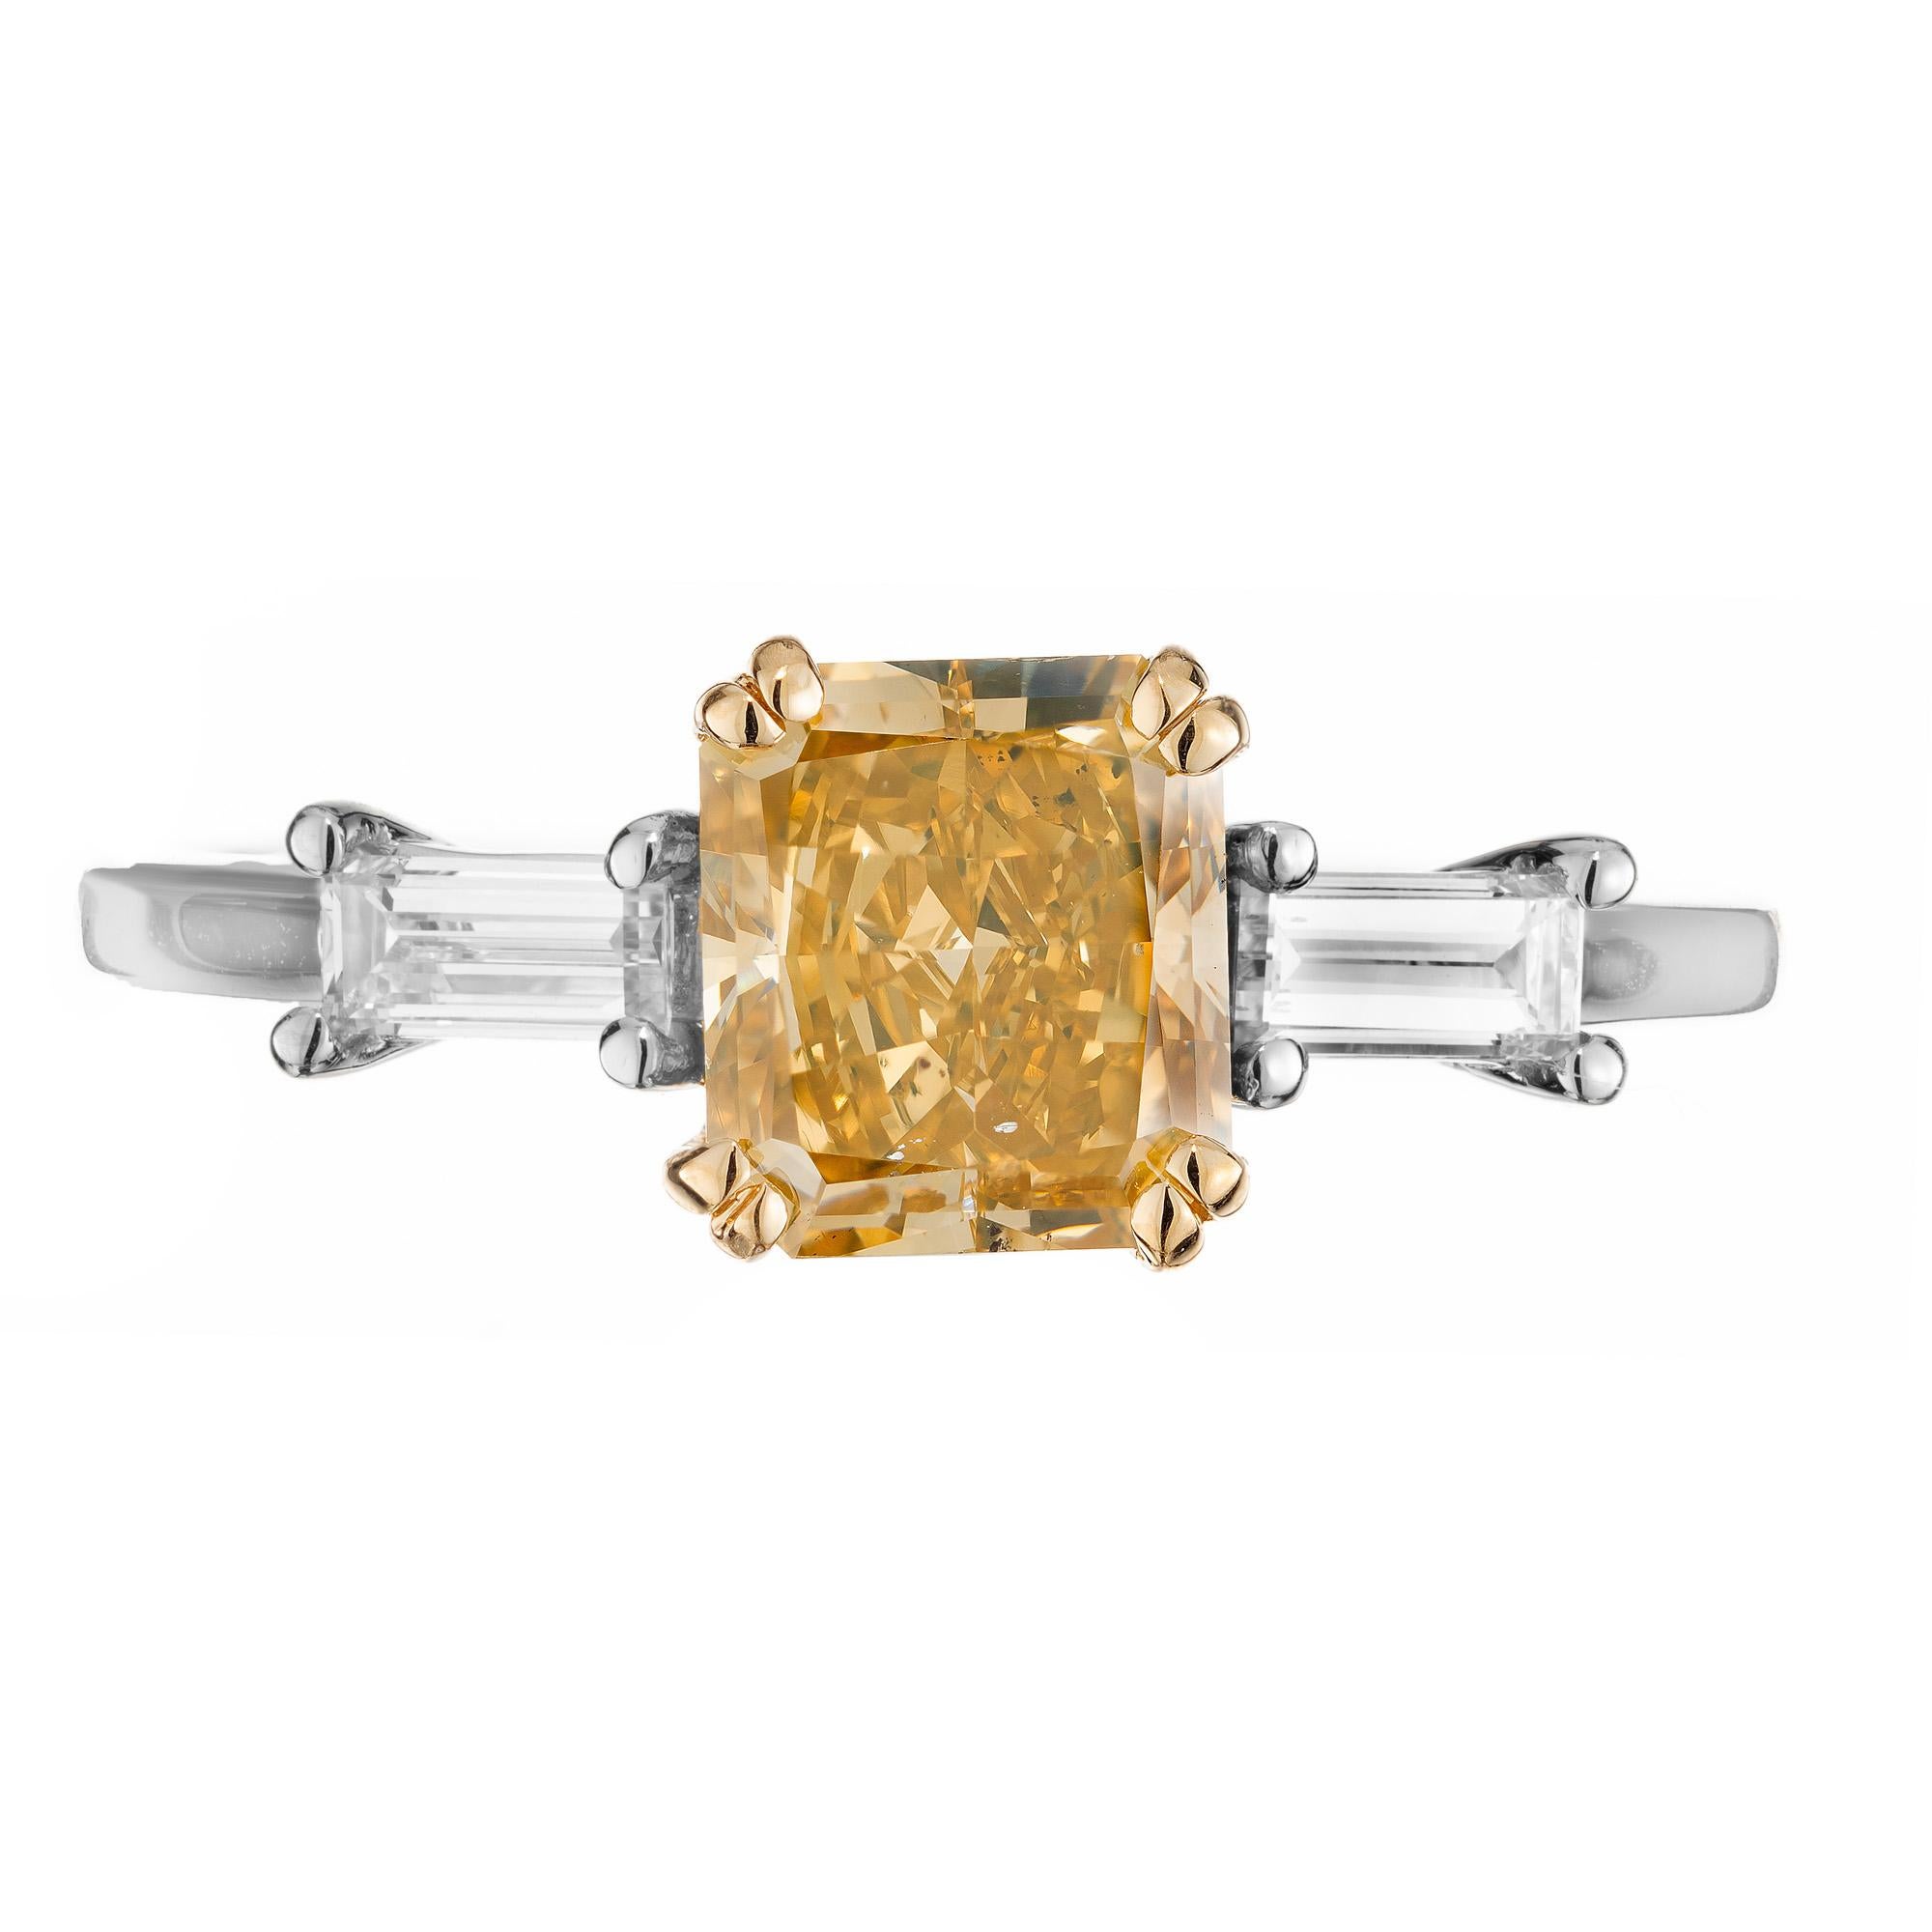 Magnifique bague de fiançailles en diamant radiant de 1,42 carat certifié par le GIA. Au centre de cette monture à trois pierres se trouve un diamant de taille rectangulaire jaune brunâtre de 1,42 ct. Magnifiquement rehaussé par 2 diamants baguettes